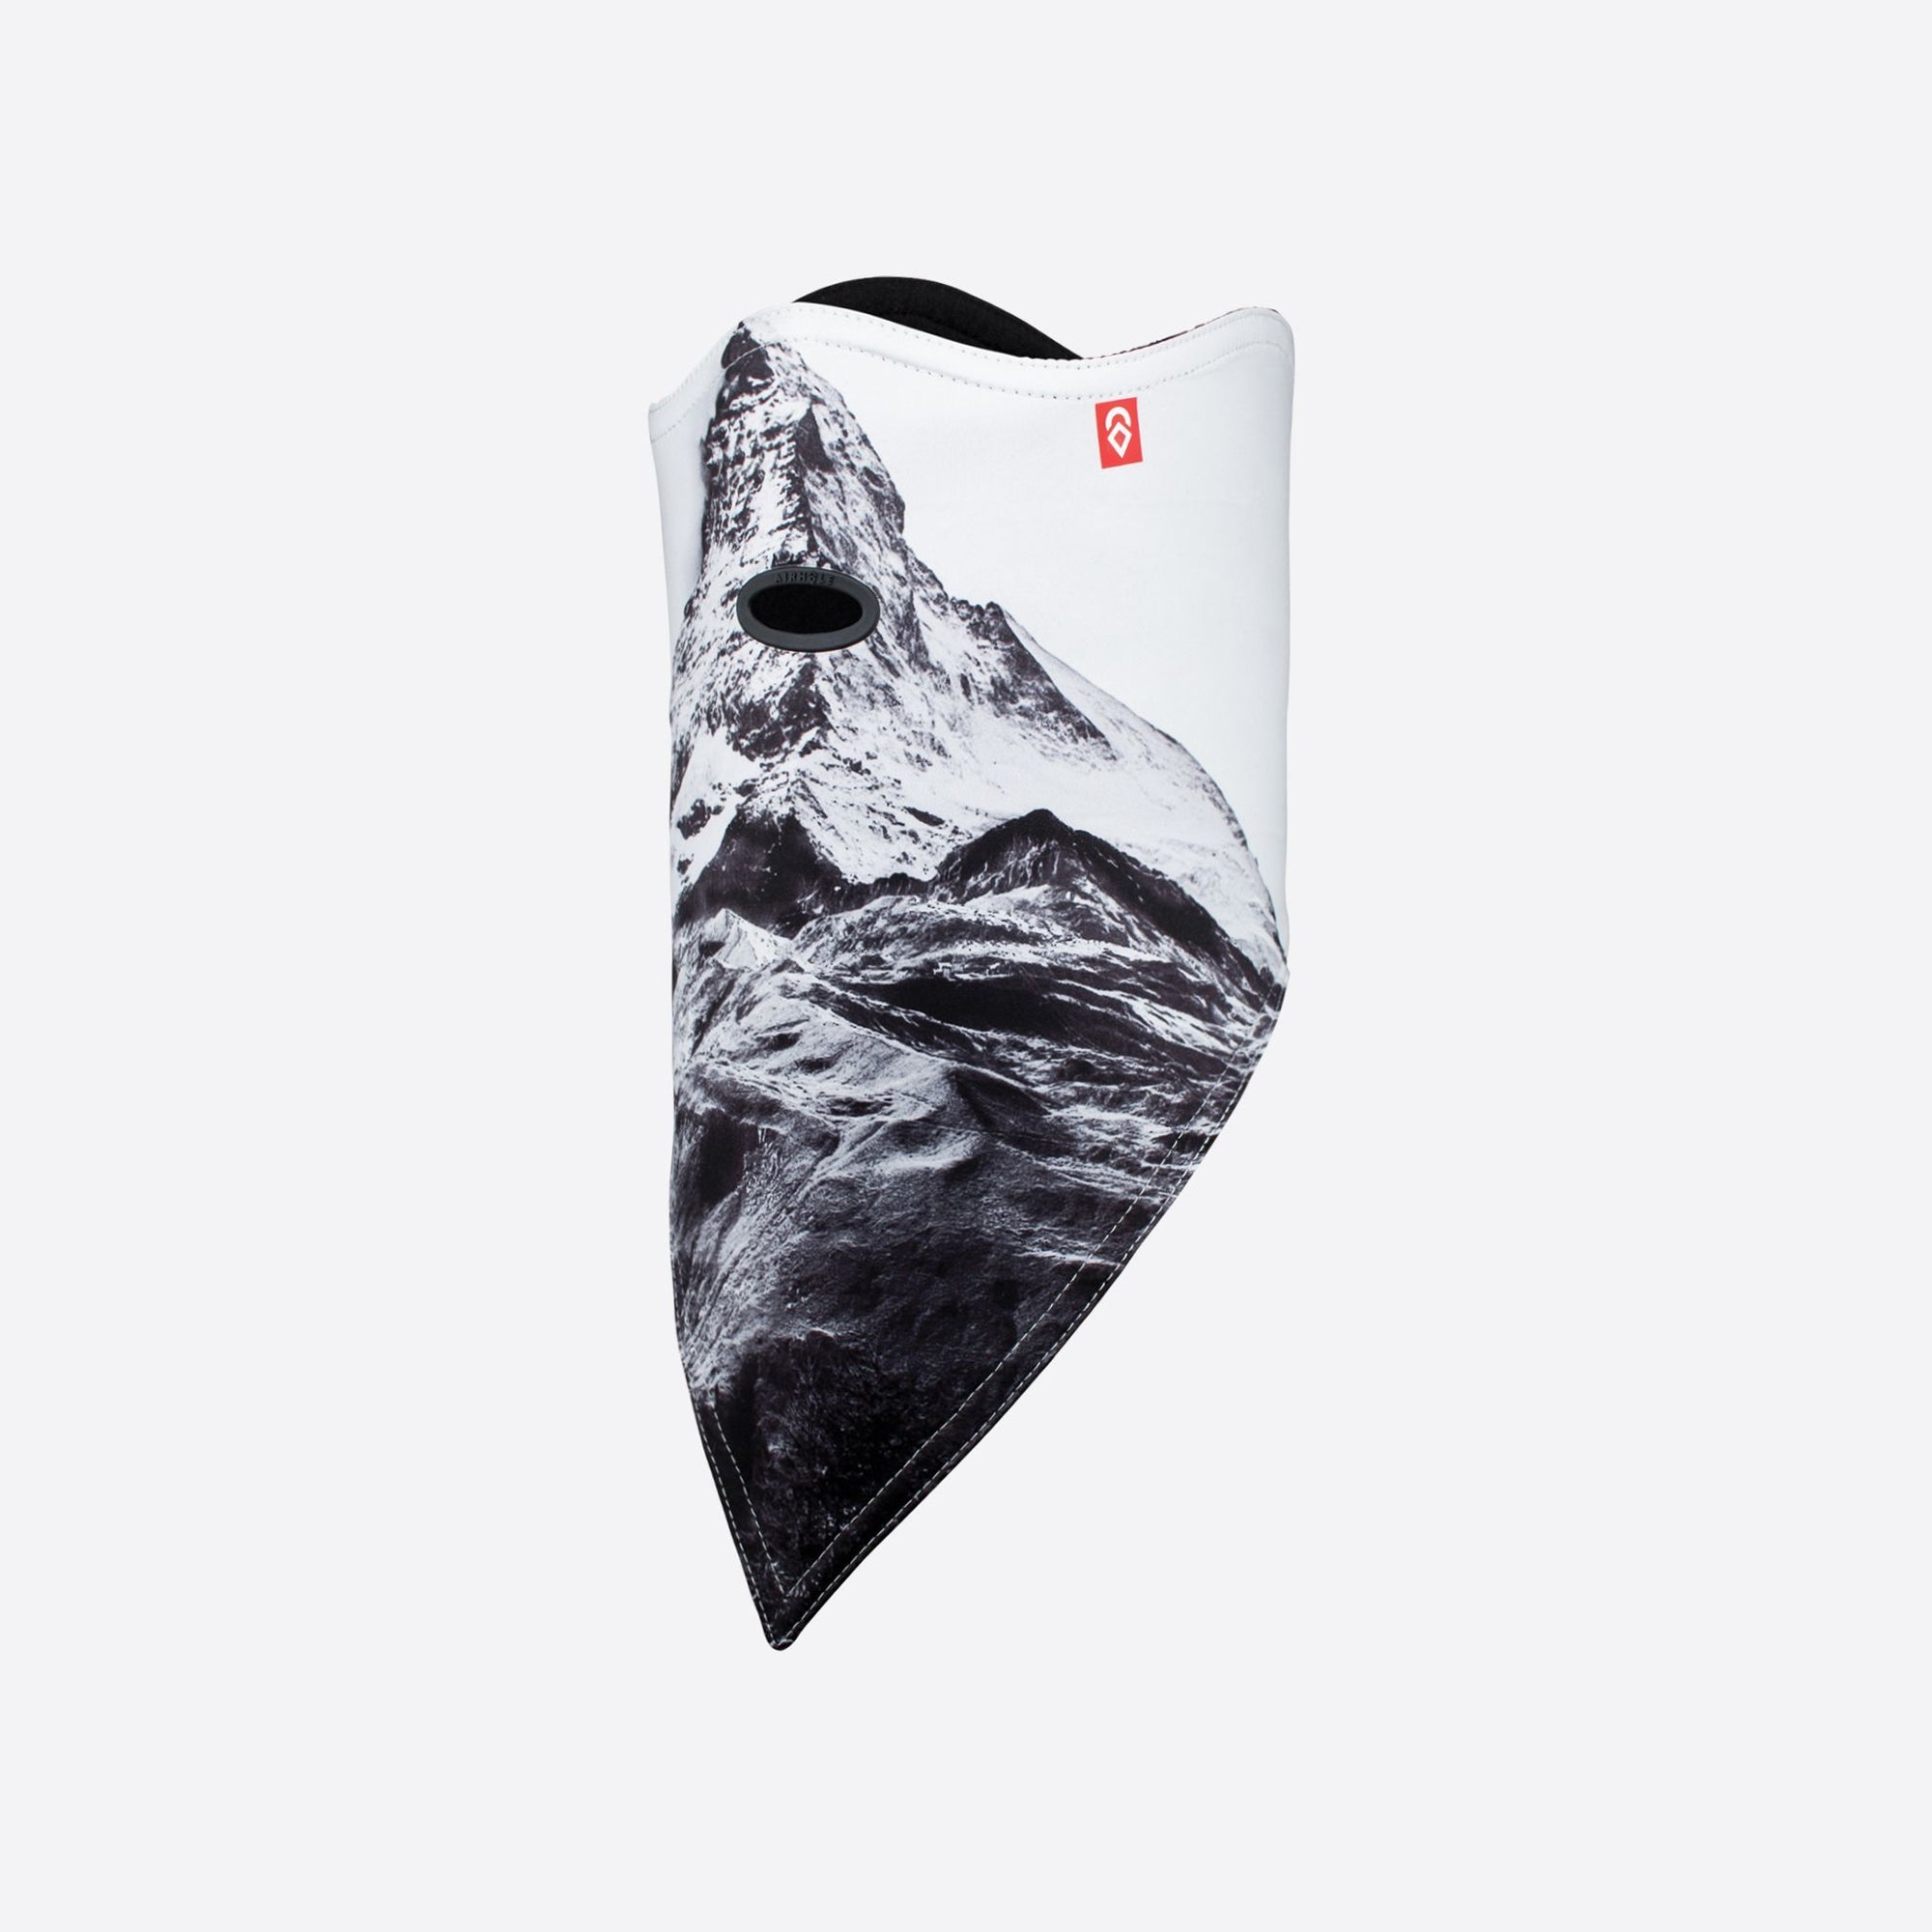 AIRHOLE Facemask Standard 10K Softshell Matterhorn SNOWBOARD ACCESSORIES - Snowboard Facemasks Airhole 